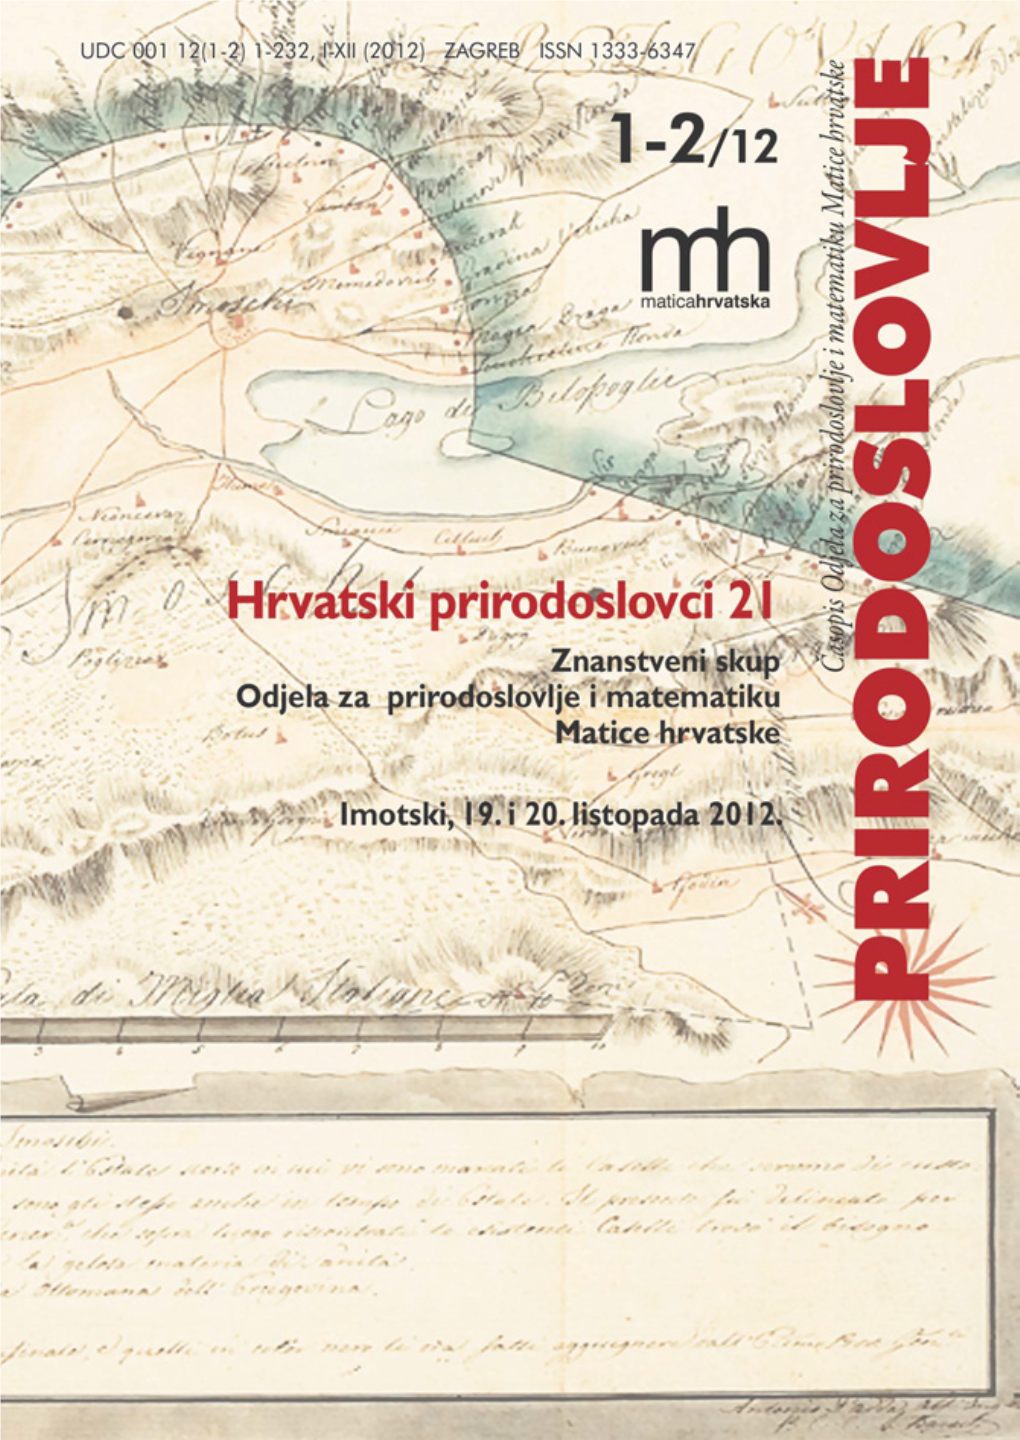 (1-2) VI (2012) Proslov